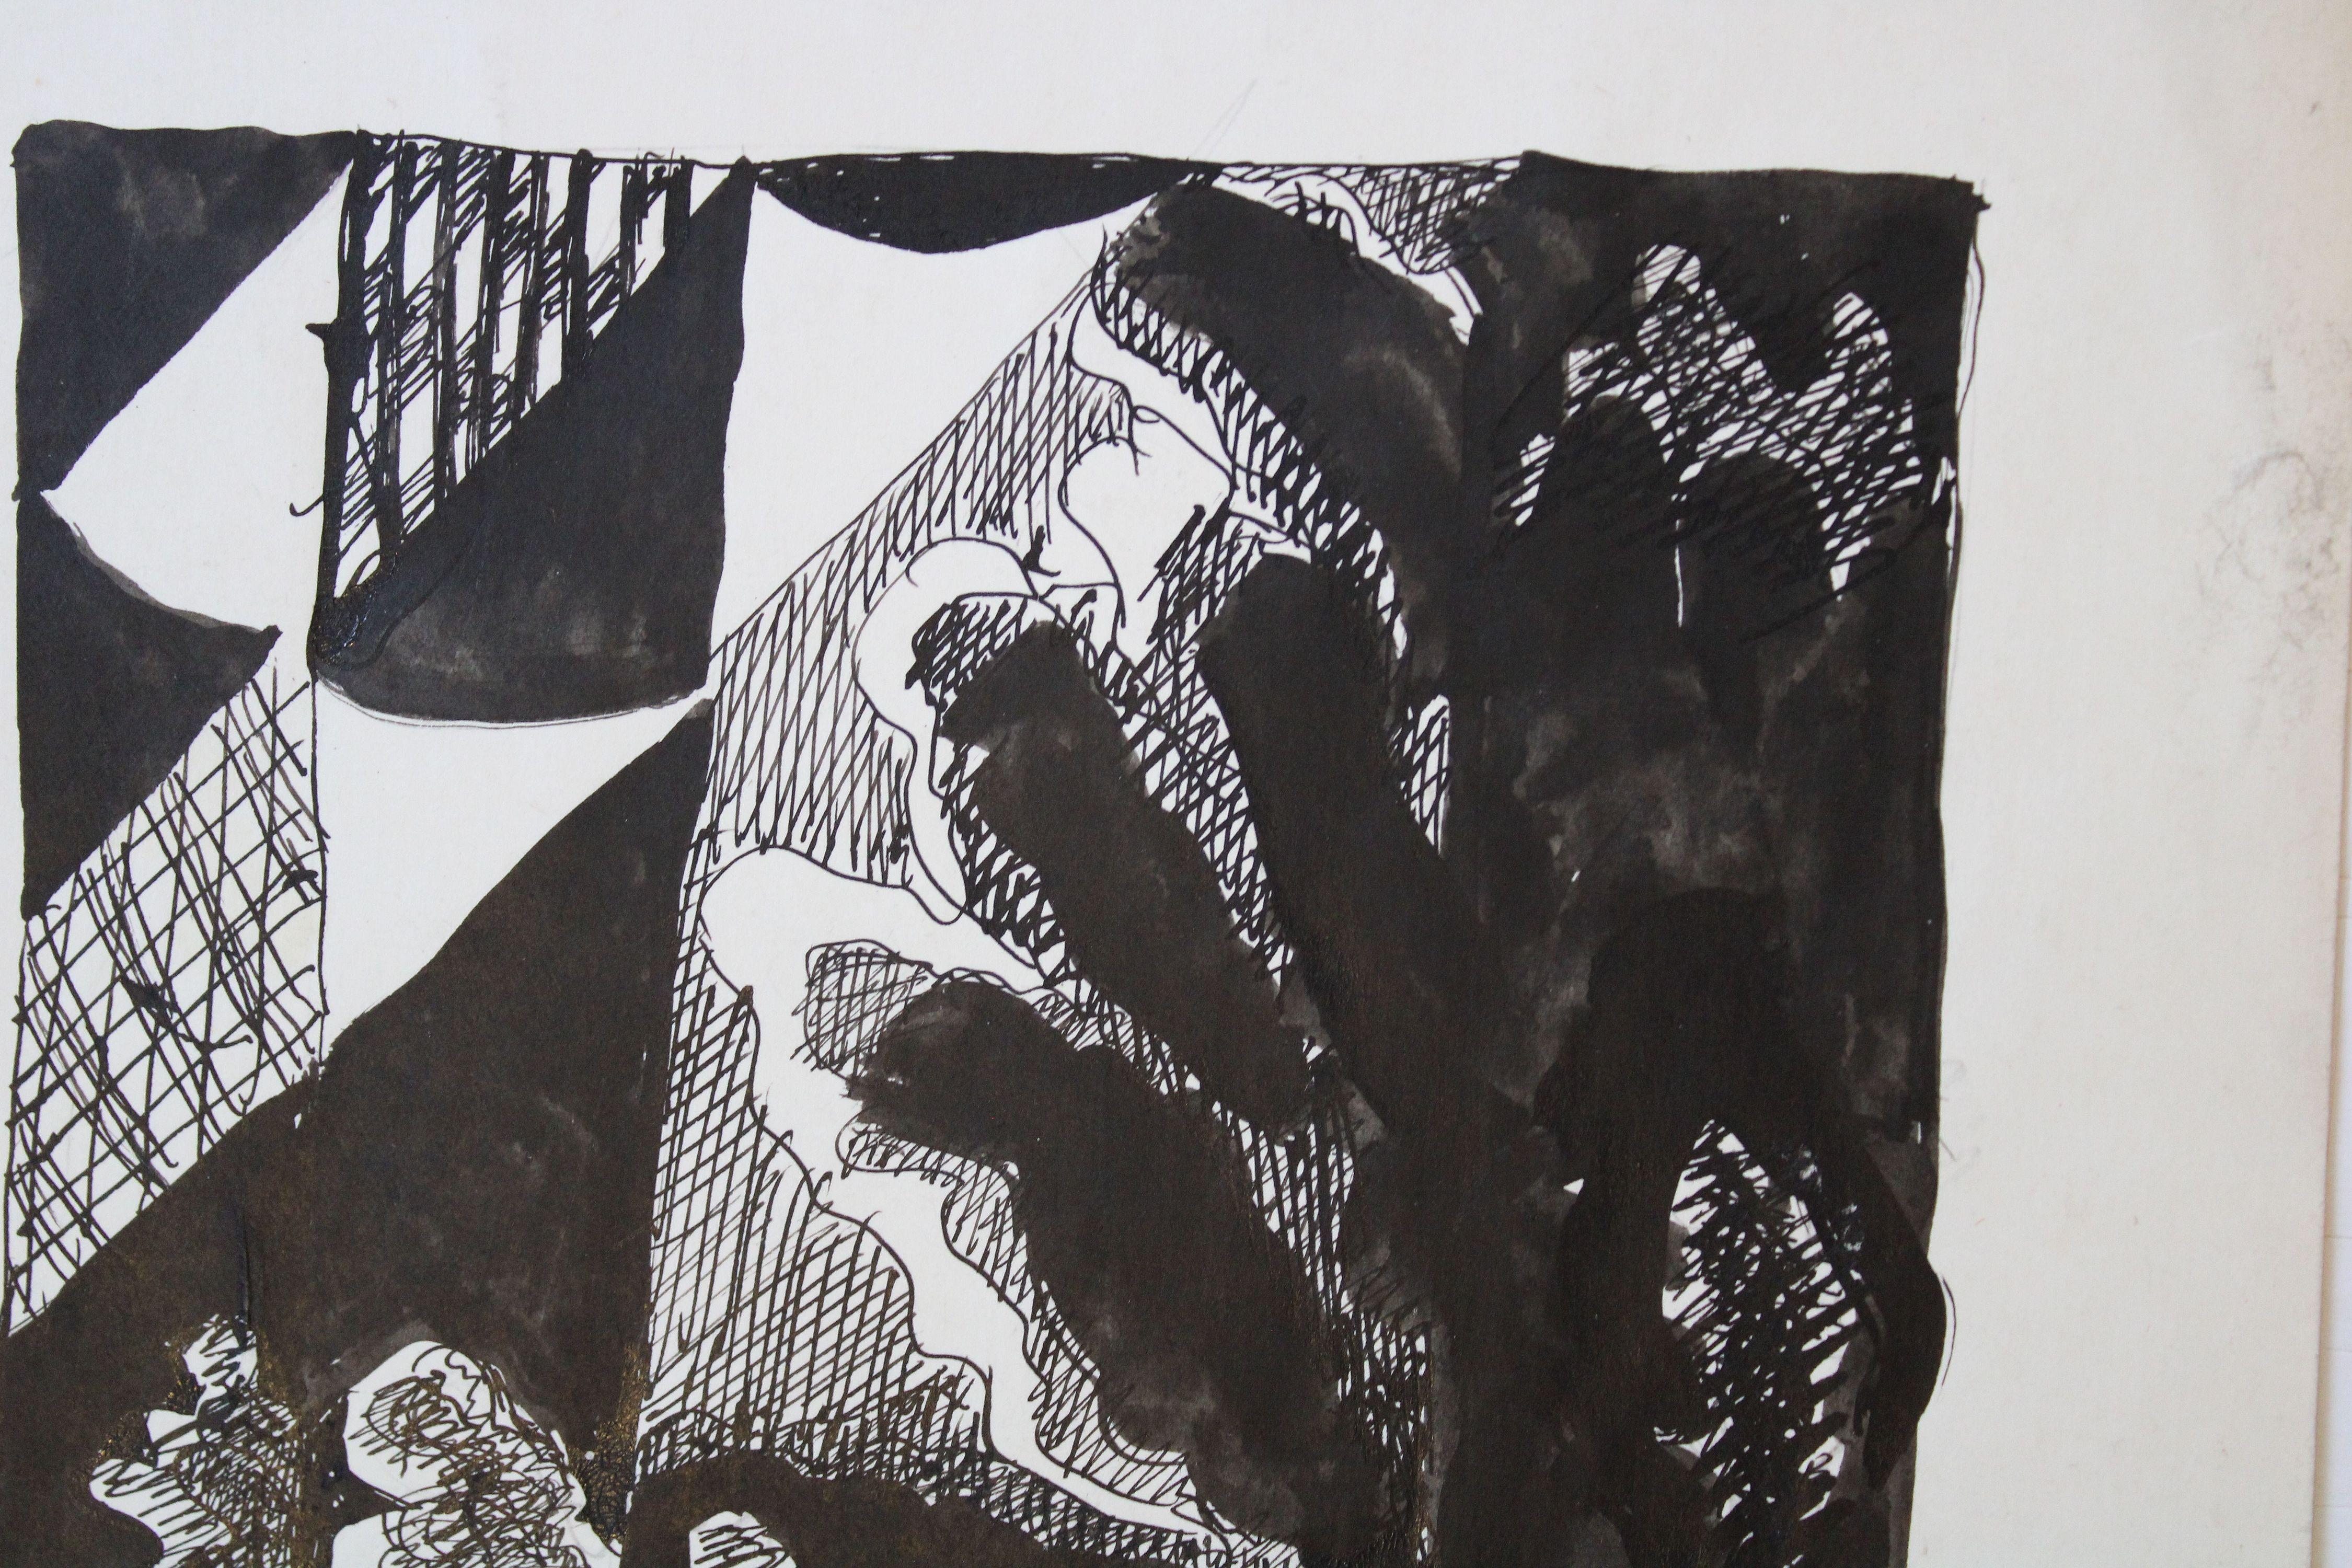 Landschaft. 1983, Papier, Tinte, 27x19 cm, Landschaft (Abstrakt), Print, von Dzidra Ezergaile